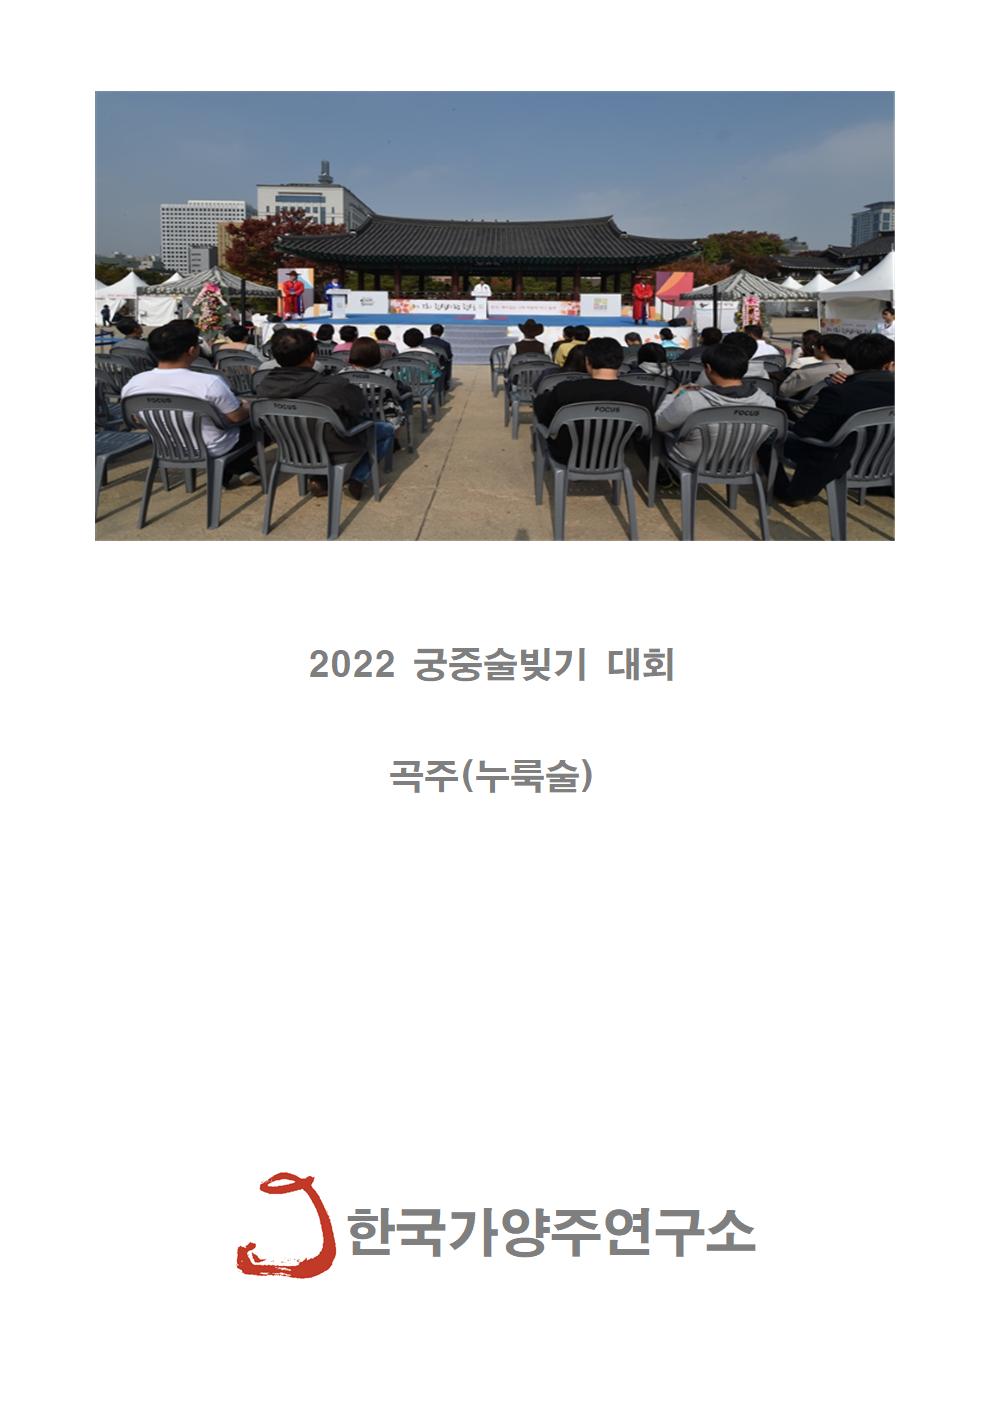 2022 궁중술빚기 대회(안)001.jpg